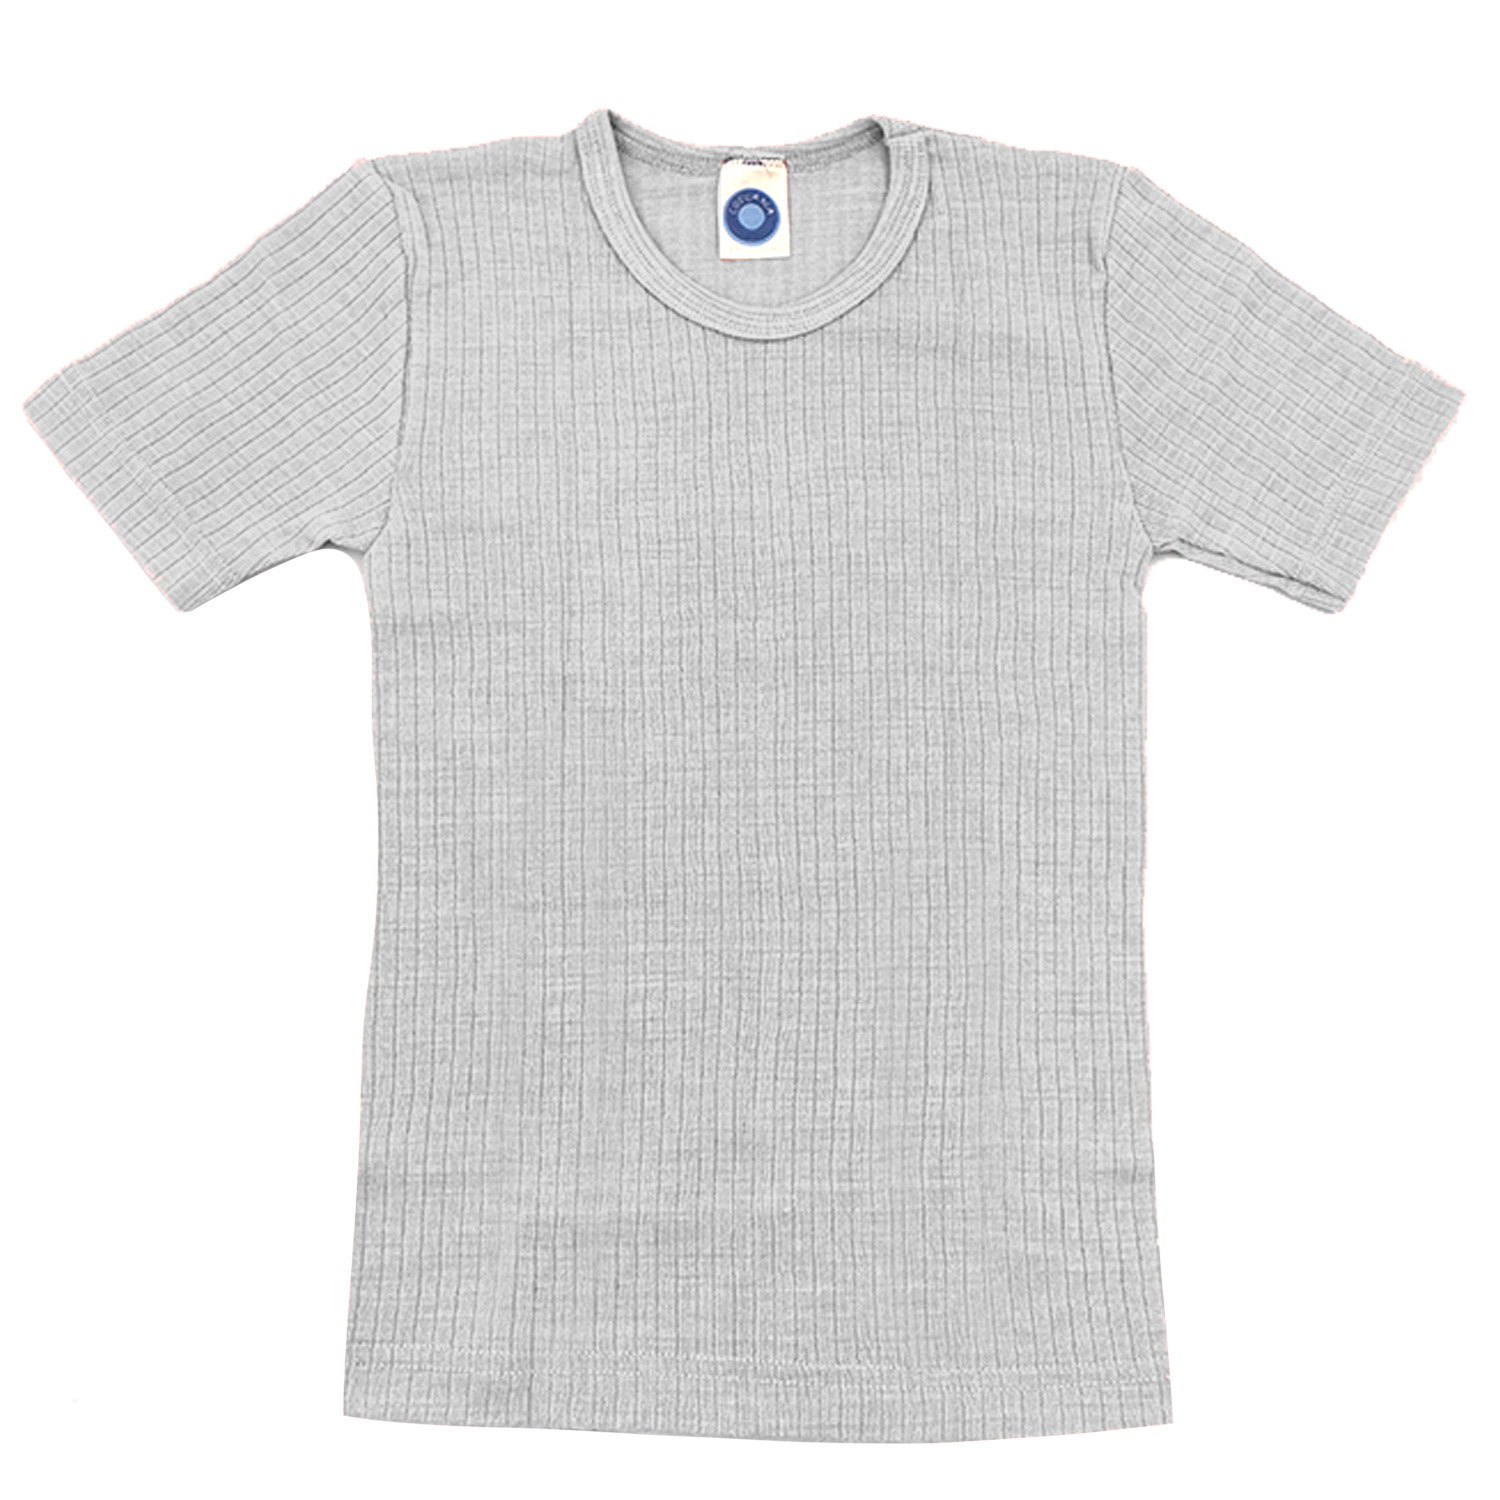 Cosilana Kinder-Unterhemd (Kurzarm) aus Baumwolle/Wolle/Seide